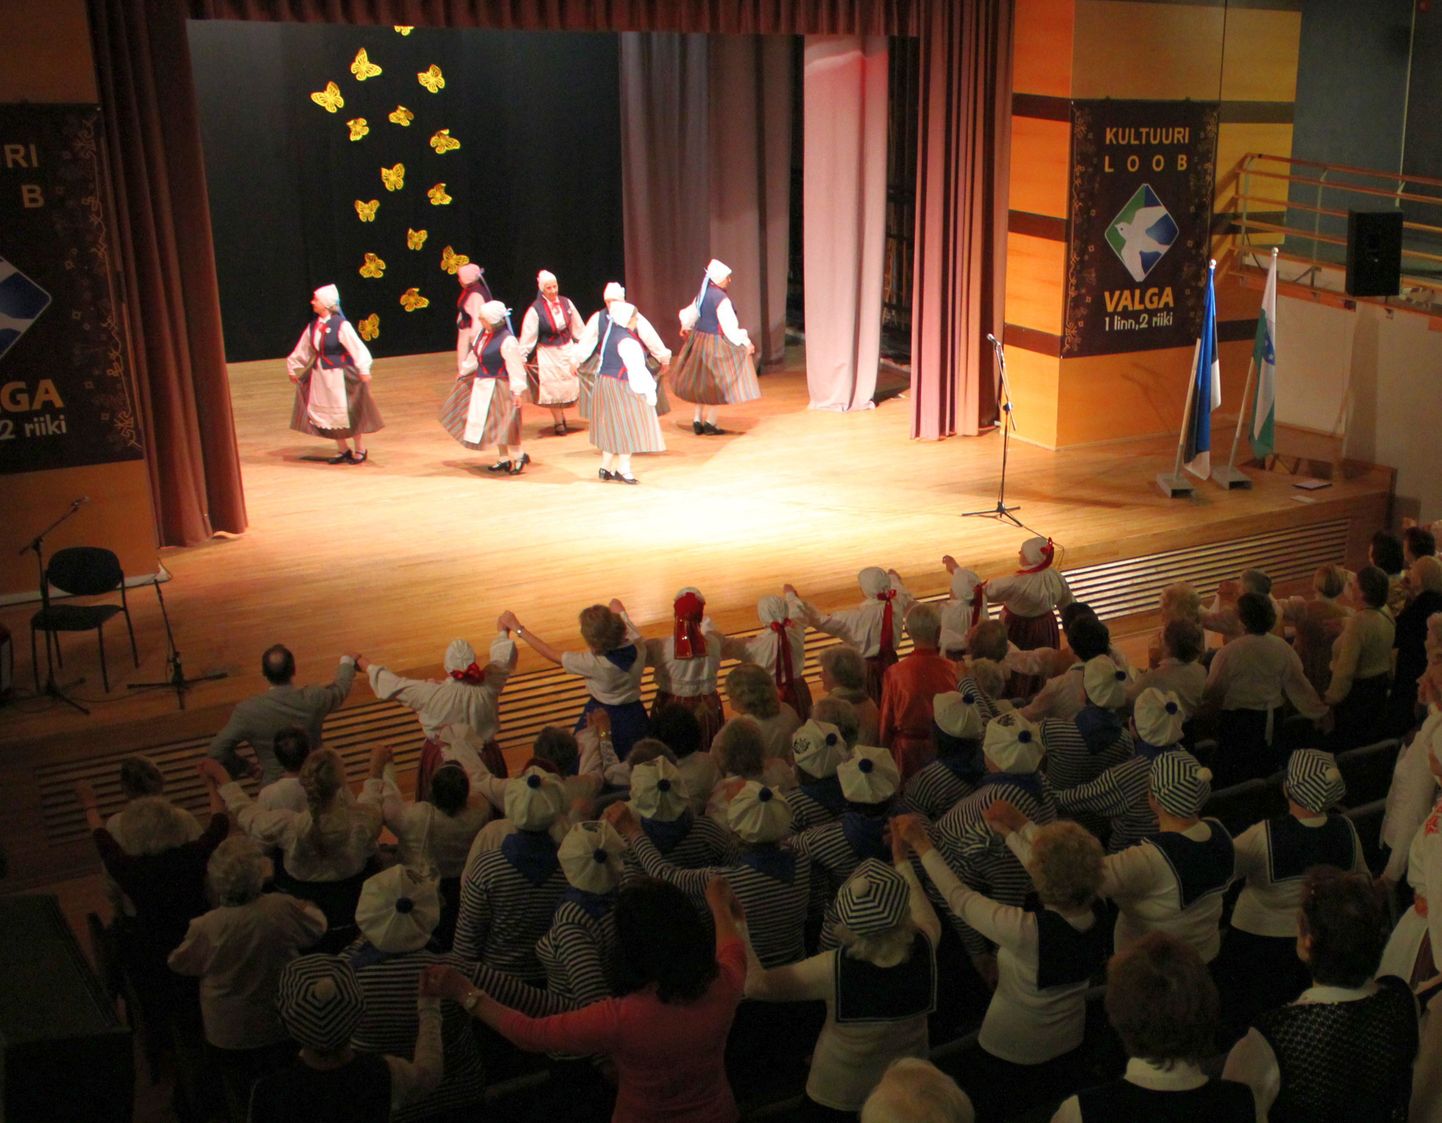 Memmede tantsupäeva esinemistele pani punkti Valga rahvatantsuselts Karikakar, kelle tantsuga «Mere pidu» liitusid kõik saalis viibinud, nende seas ka Valga linnapea Kalev Härk.